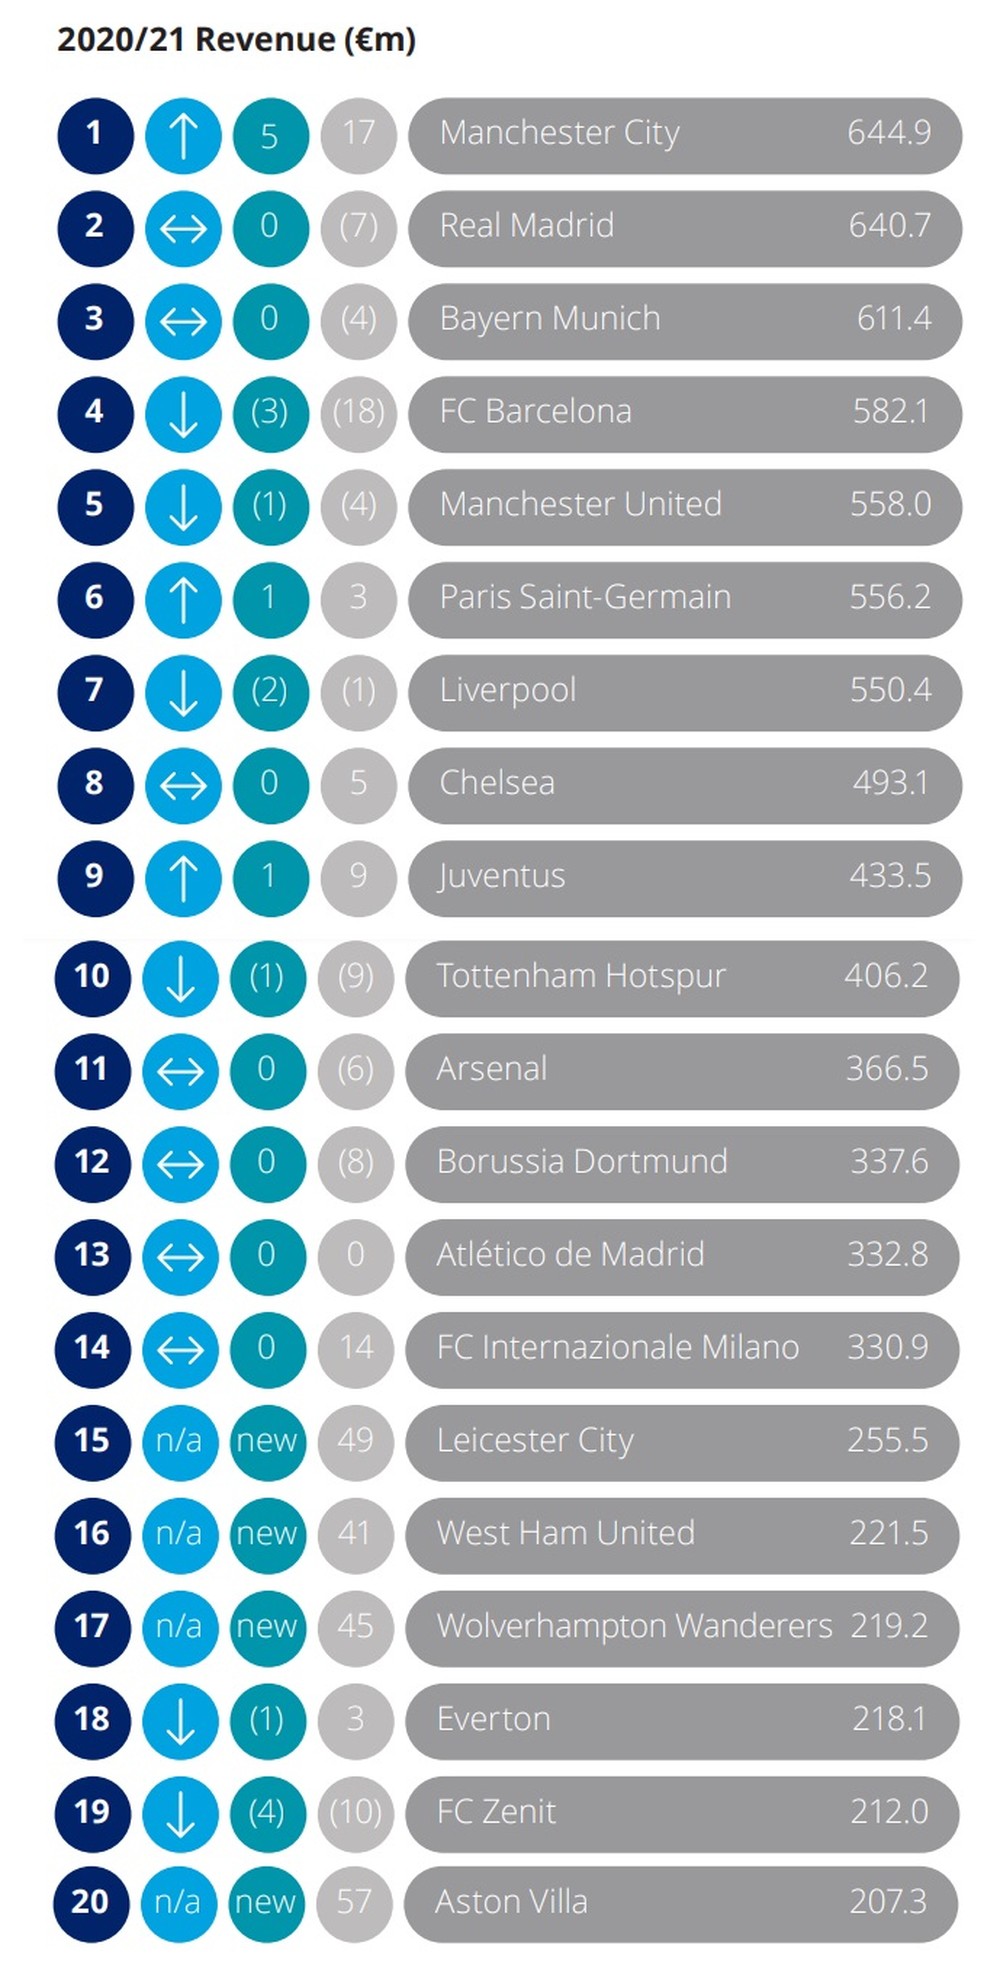 Bahia lidera o ranking dos clubes mais valiosos do Nordeste. Santa